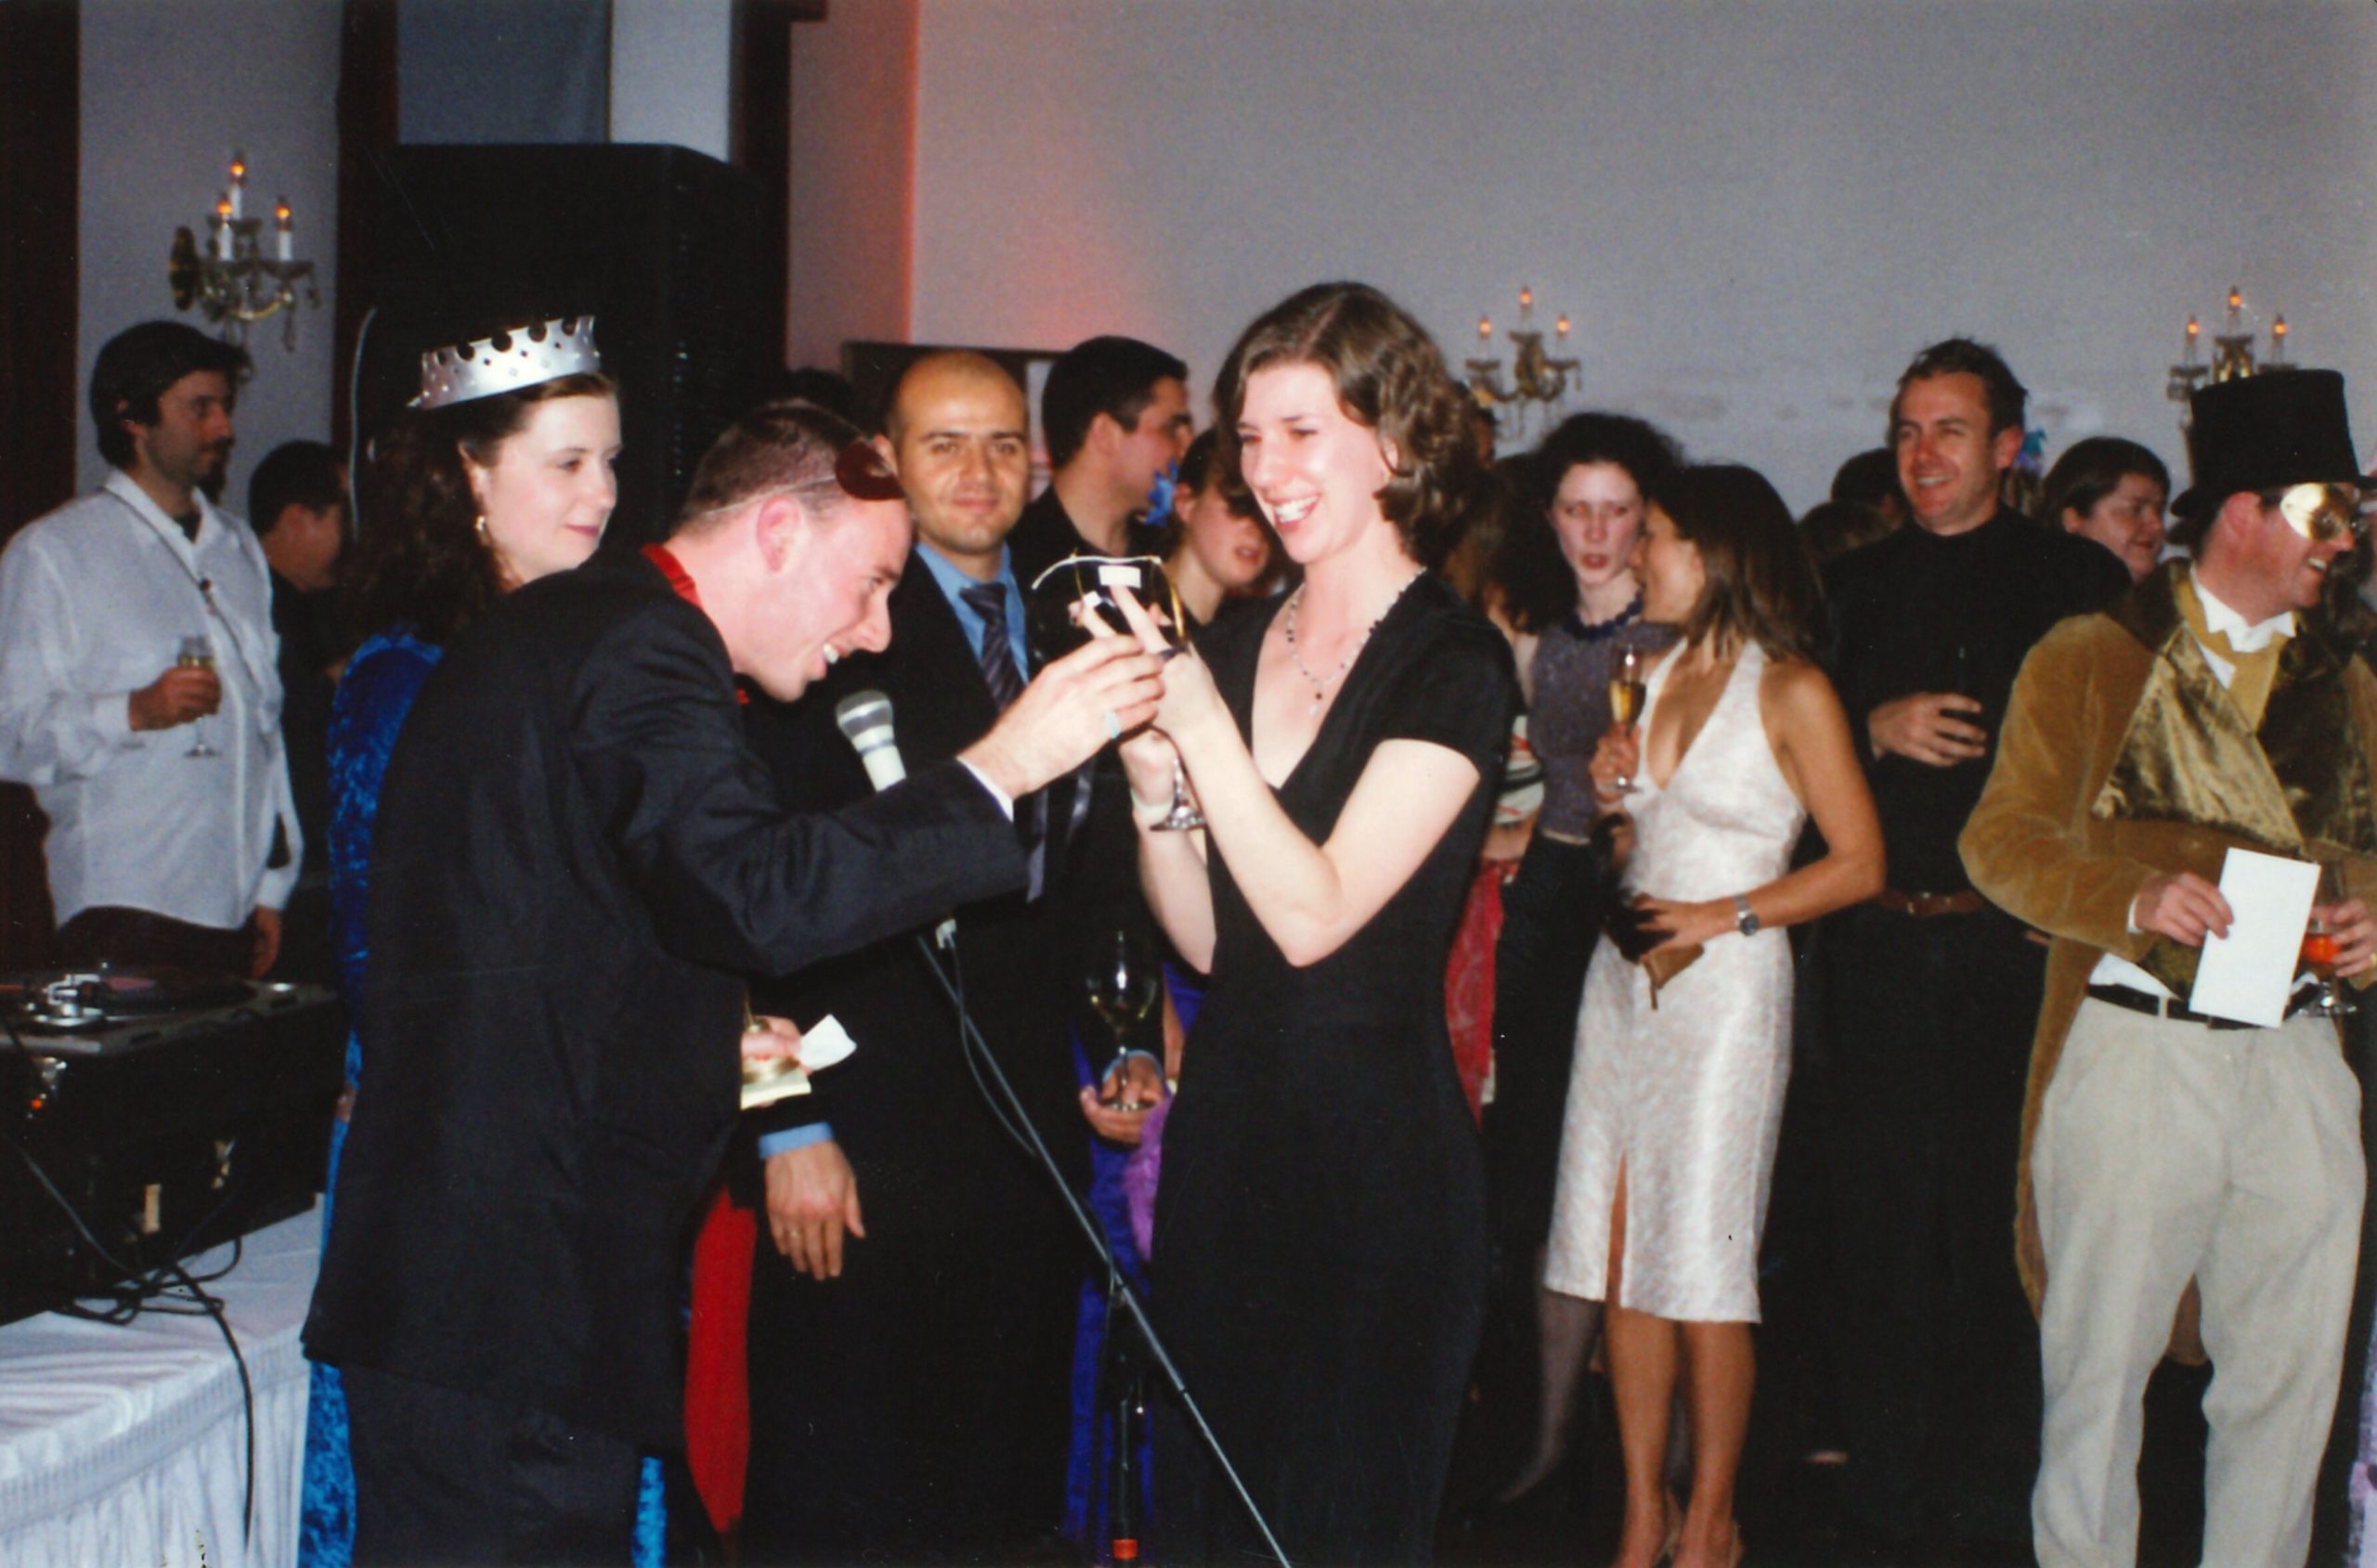 Kristin Barlow in black jacket SUPRA pres c. 2001